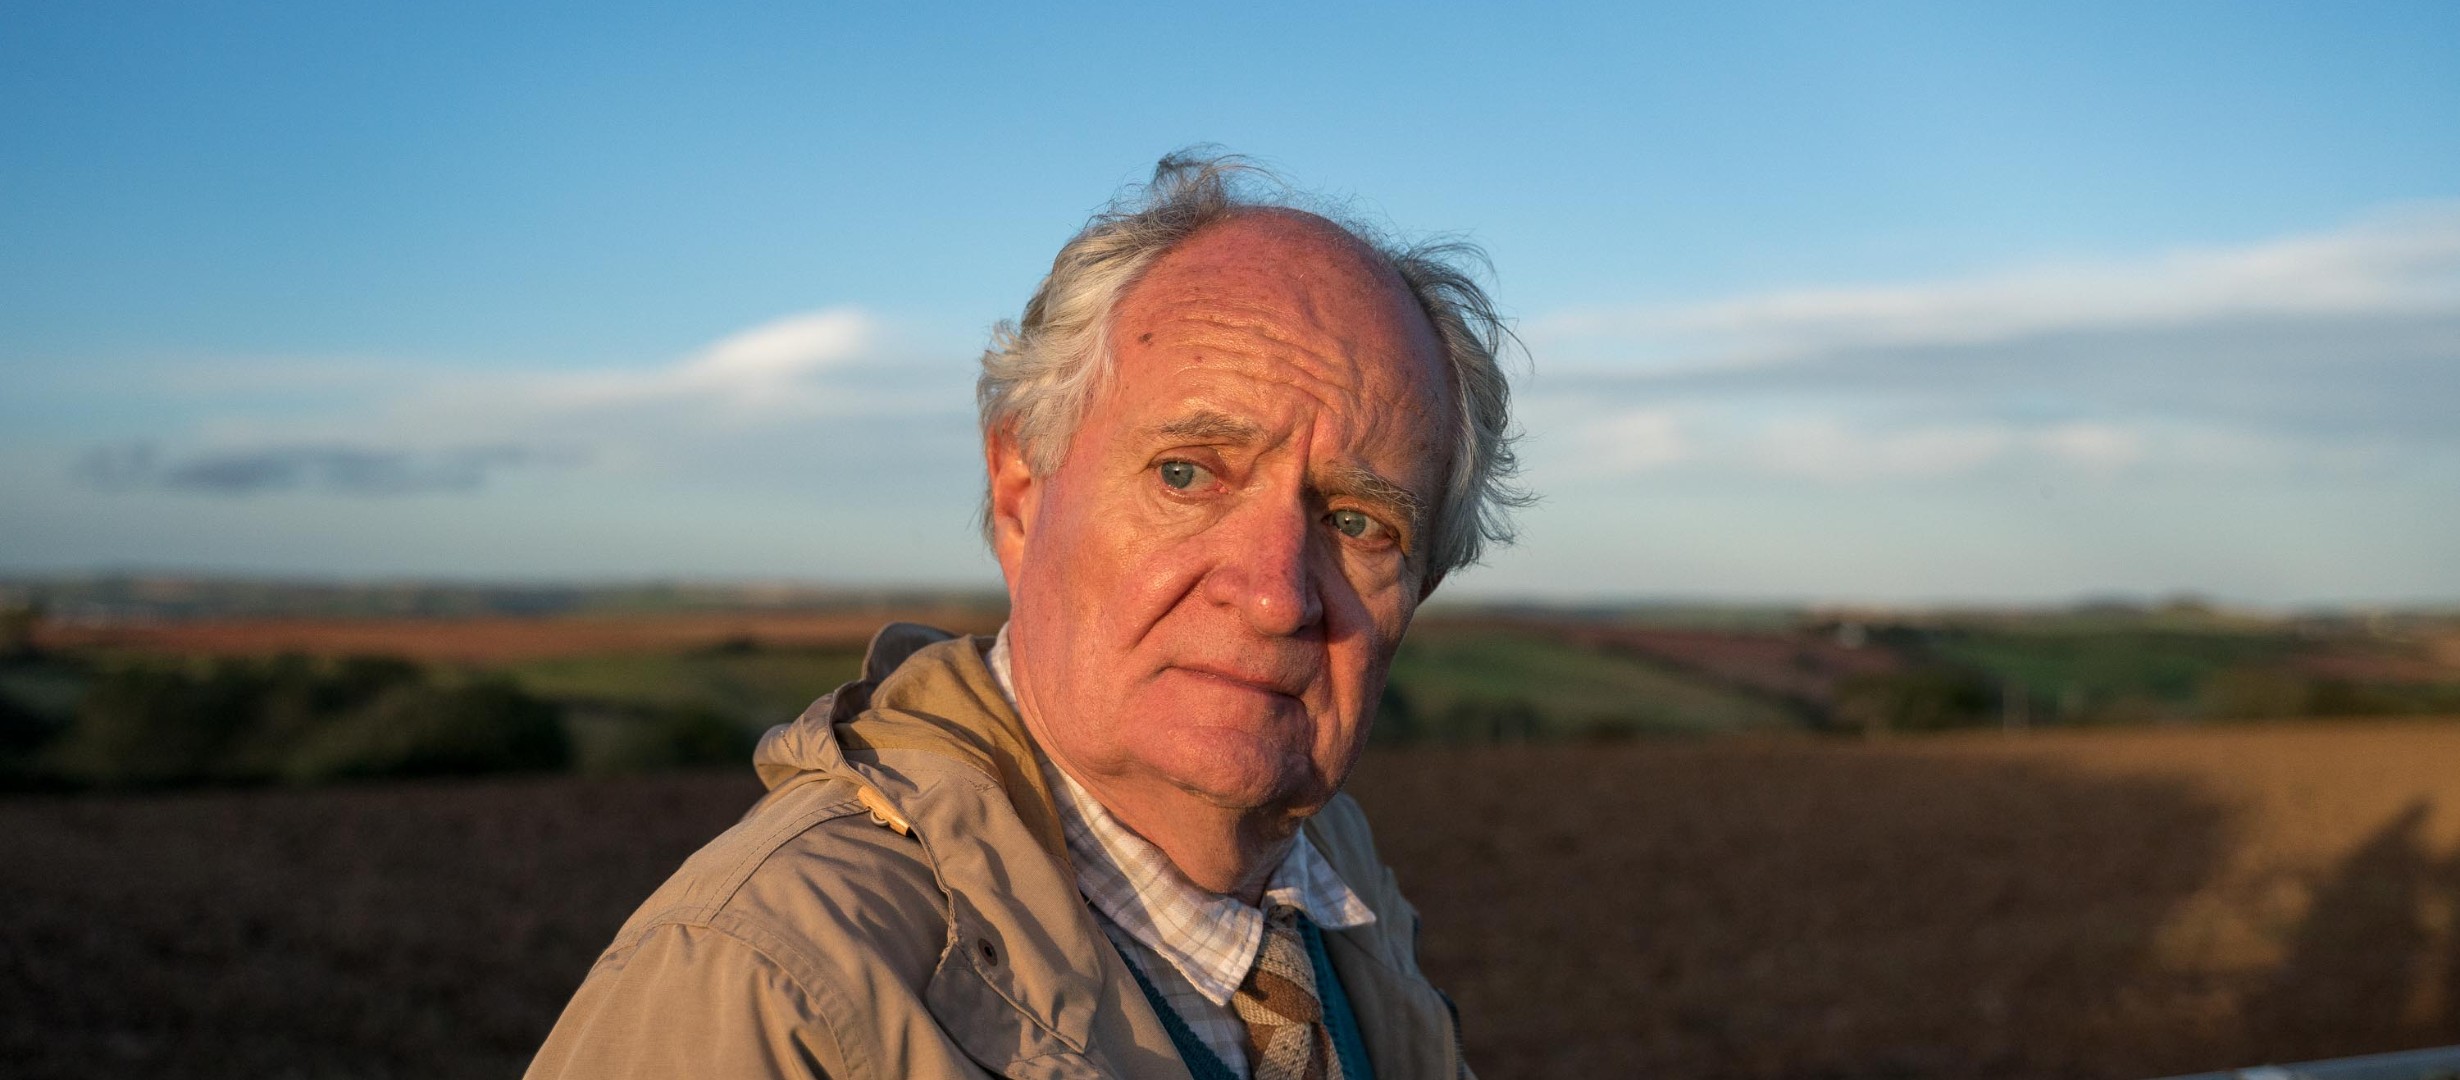 Jim Broadbent stood in a farming field